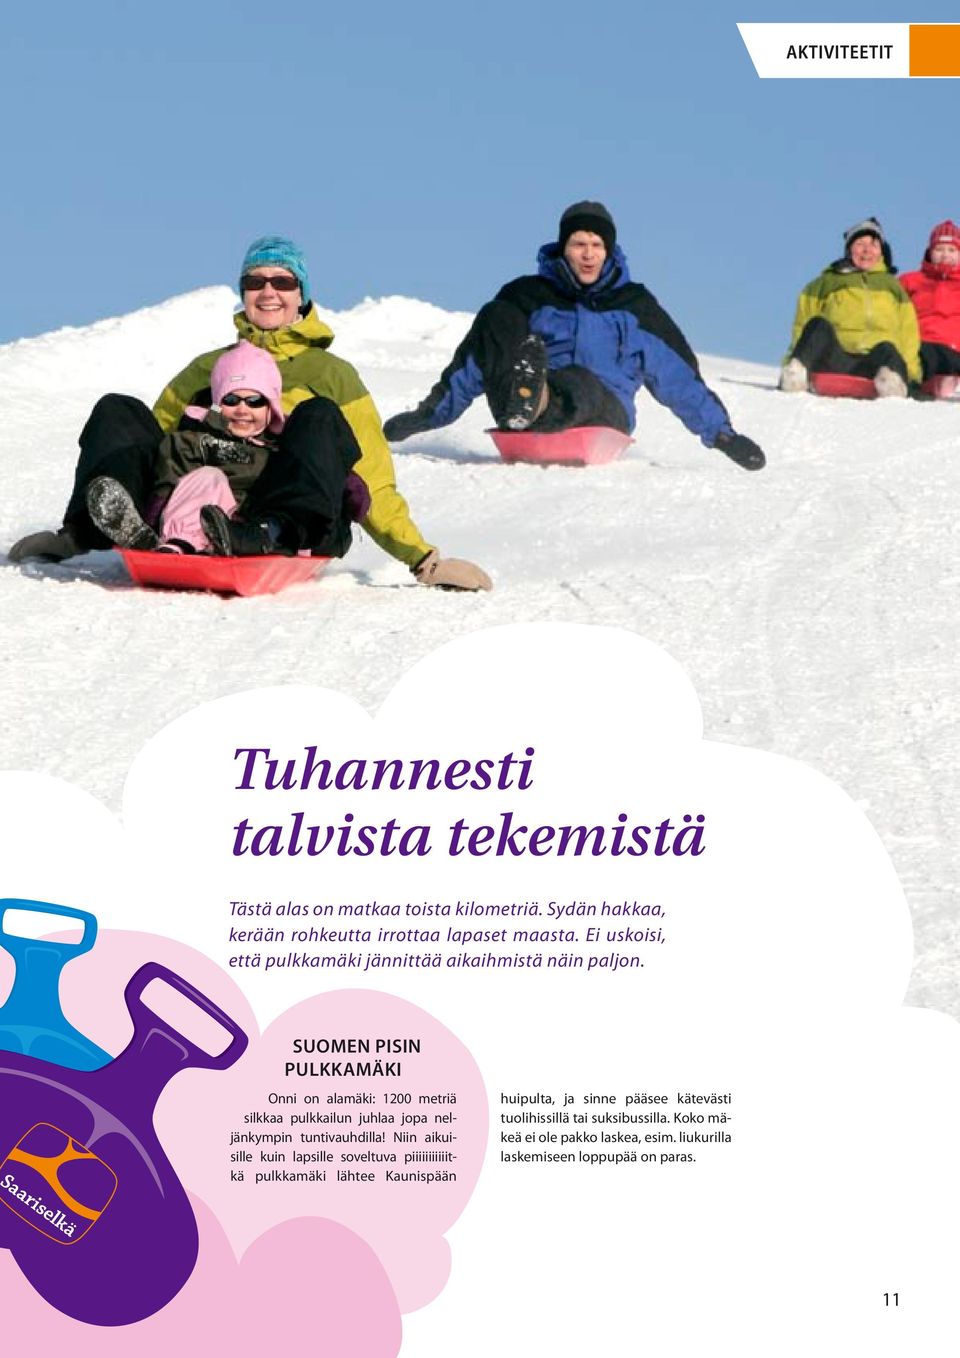 Suomen pisin pulkkamäki Onni on alamäki: 1200 metriä silkkaa pulkkailun juhlaa jopa neljänkympin tuntivauhdilla!